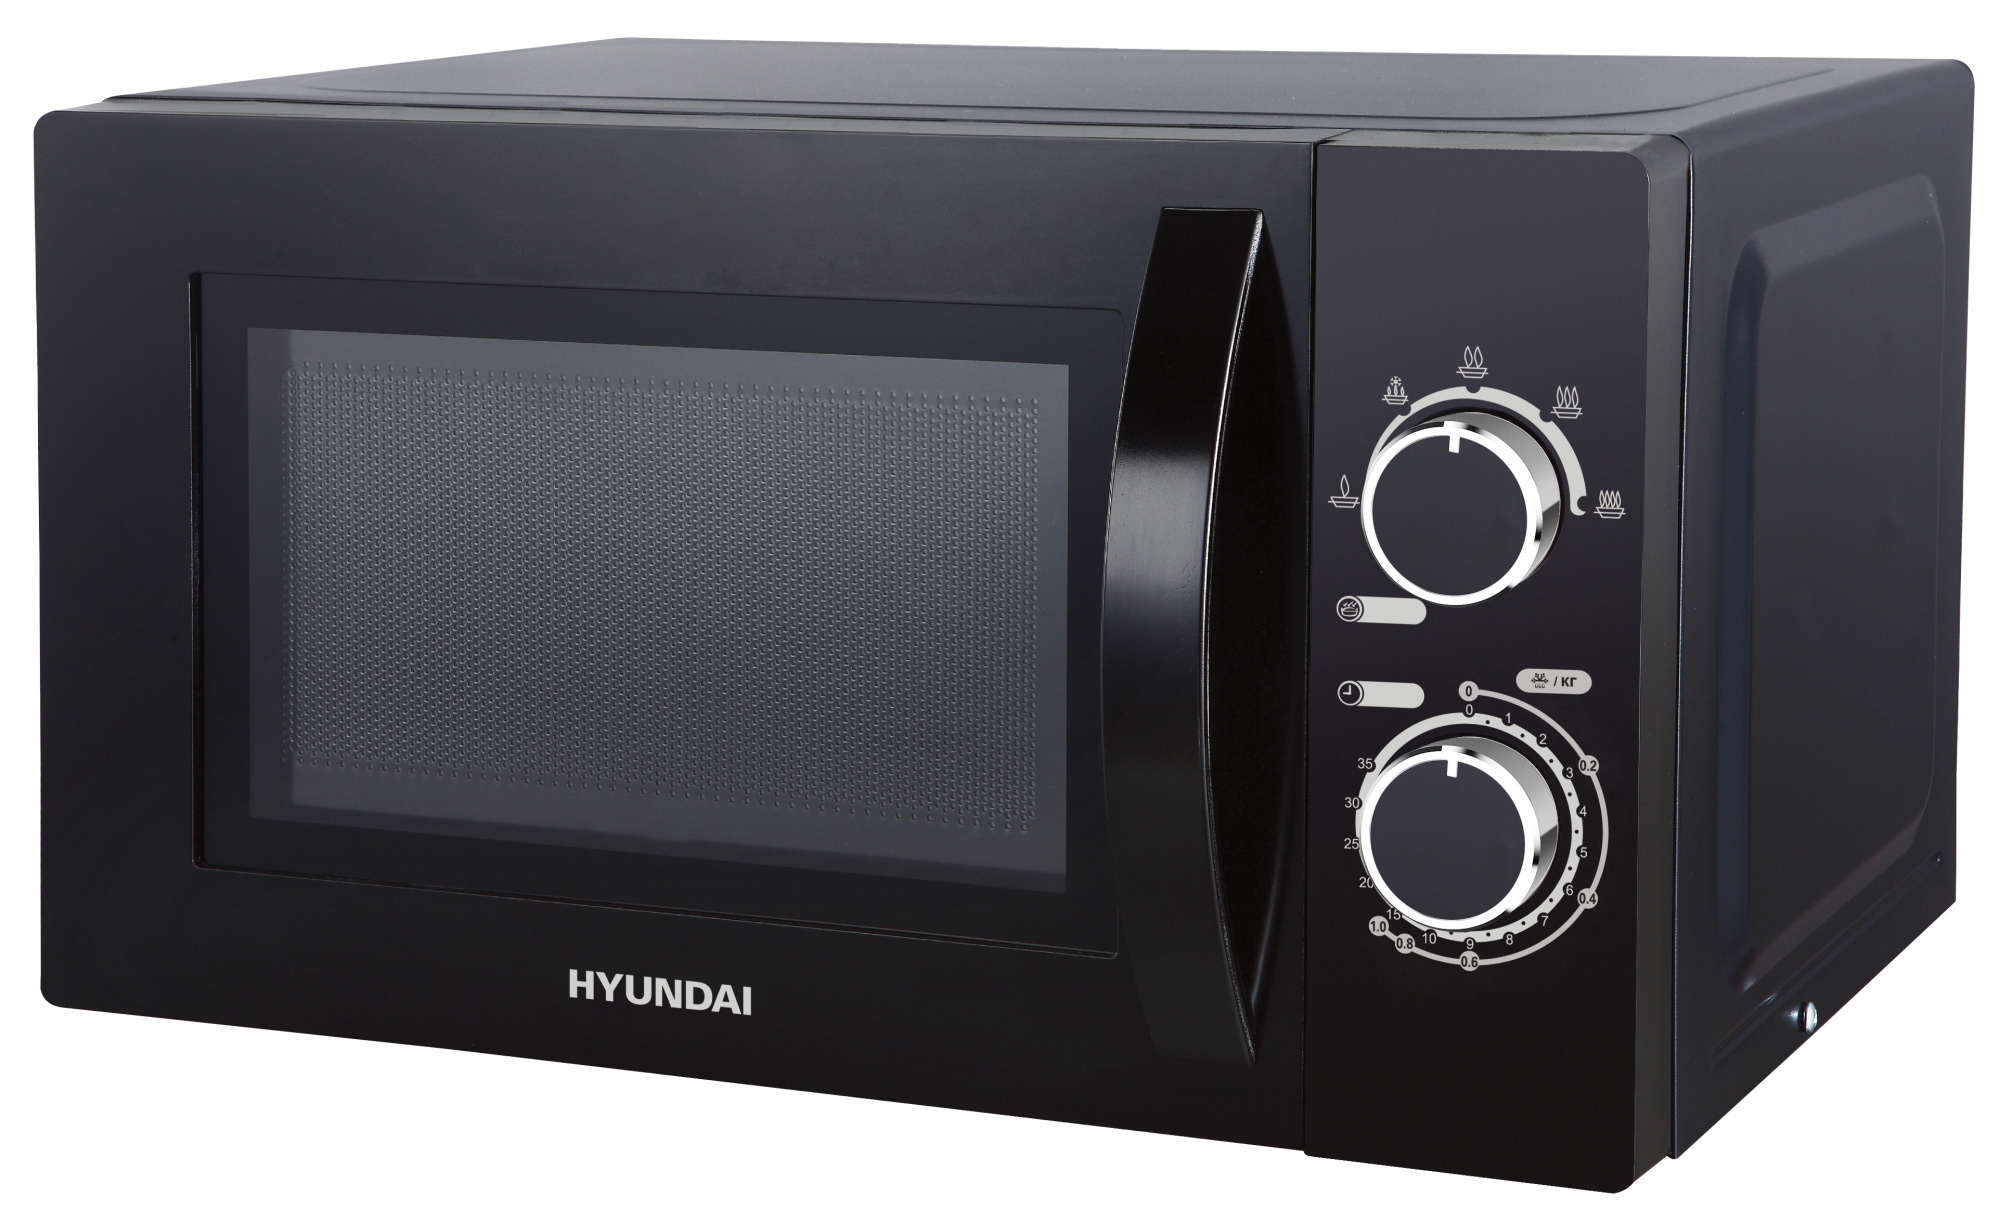 Микроволновая печь Hyundai HYM-M2063 20 л, 700 Вт, черный (1422204)